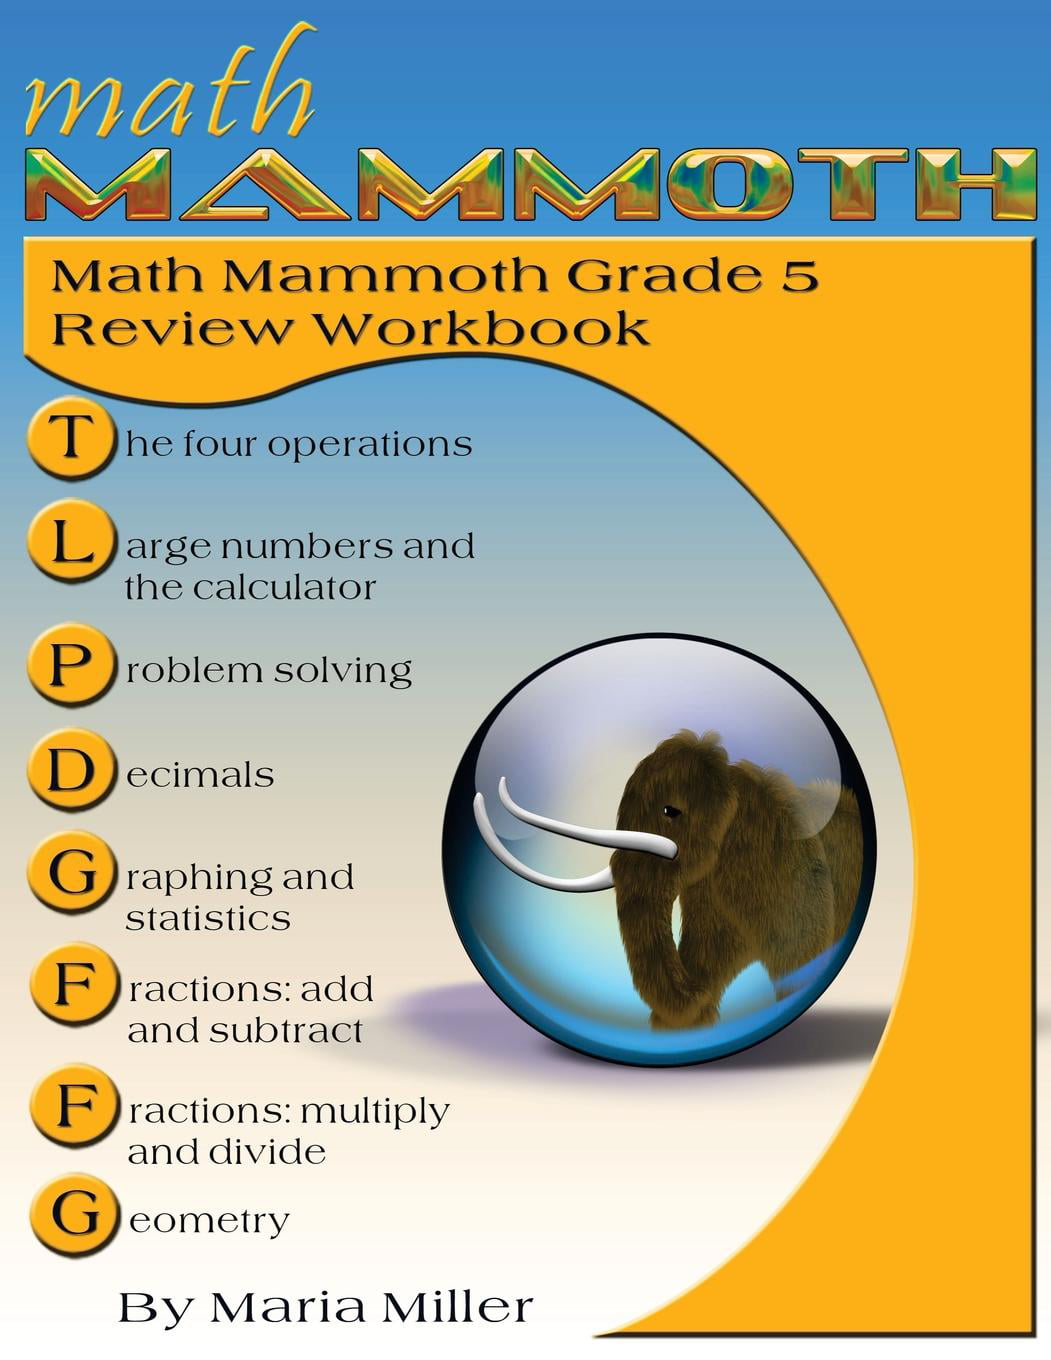 math-mammoth-grade-5-review-workbook-walmart-walmart